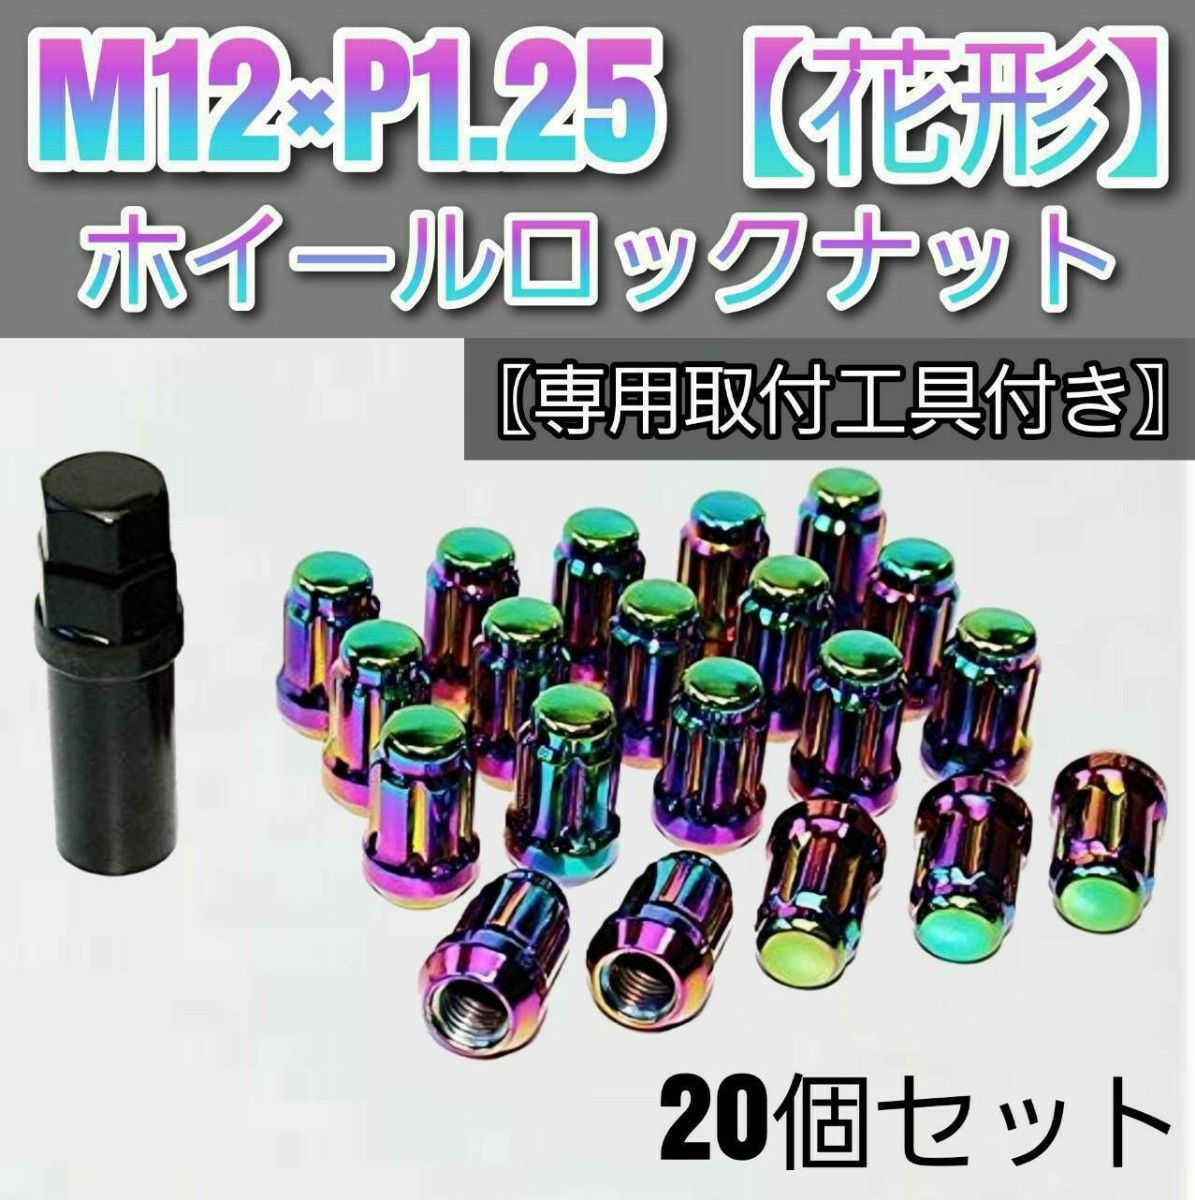 【盗難防止】ホイールロックナット20個 スチール製 M12/P1.25 専用取付工具付 マジョーラ